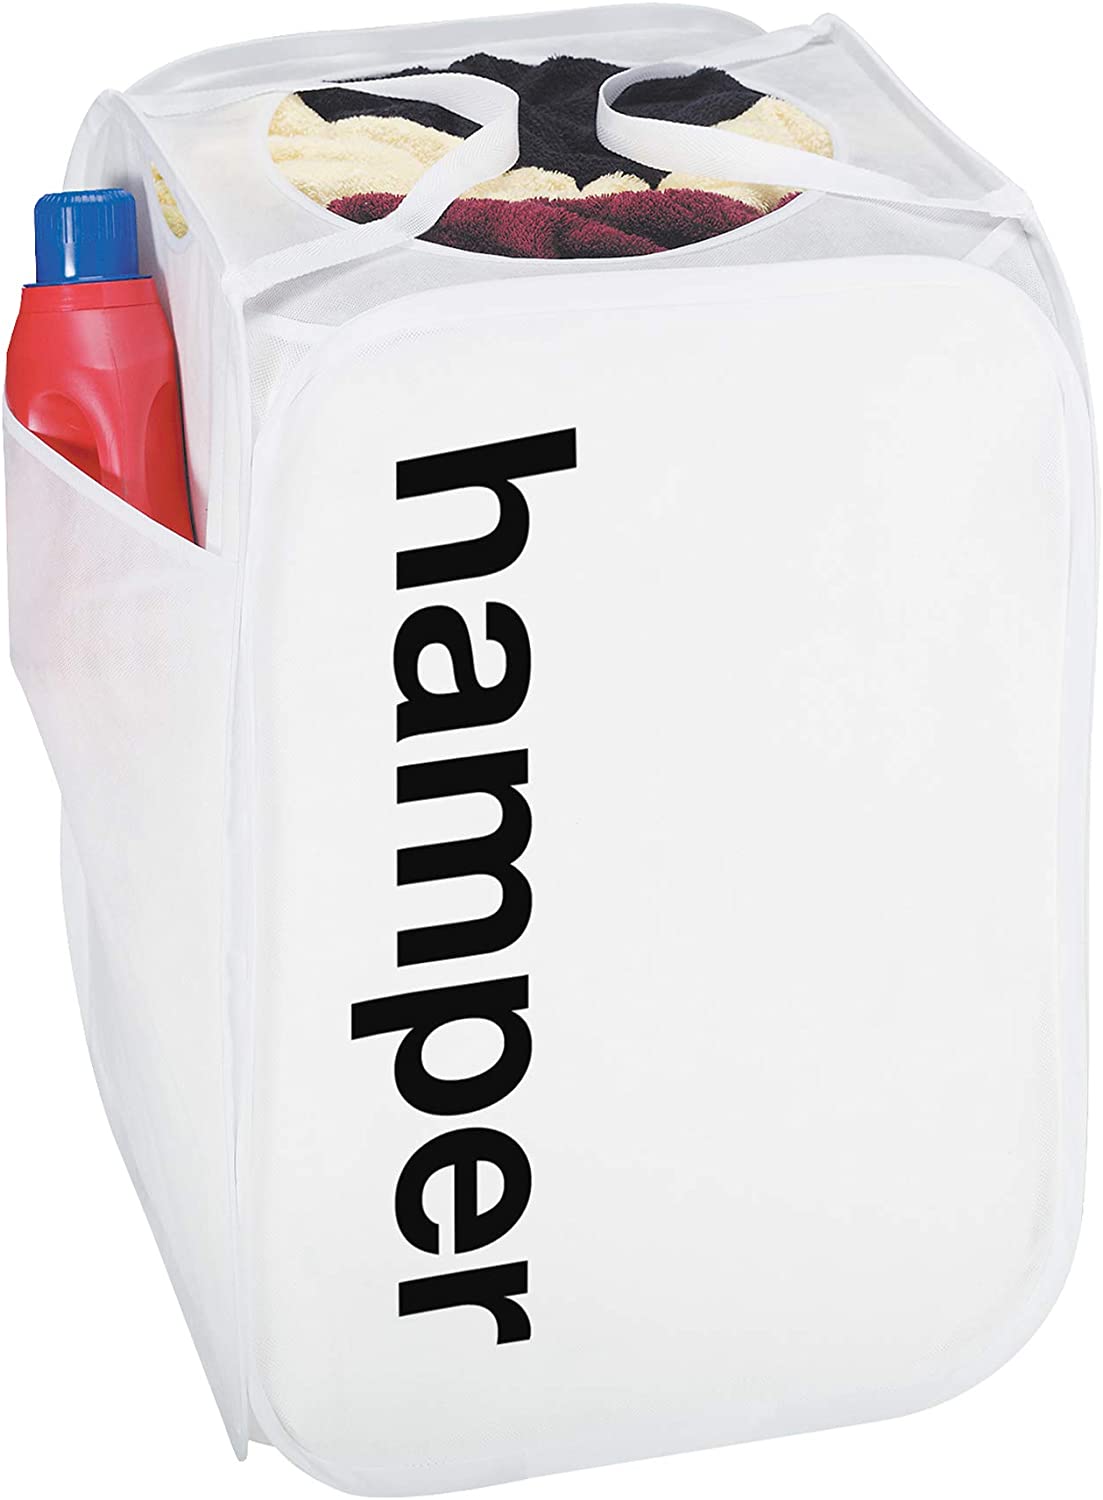 King Size Pop Up Laundry Hamper with Side Pocket and Handles - Holds 3 Loads - Smart Design® 1